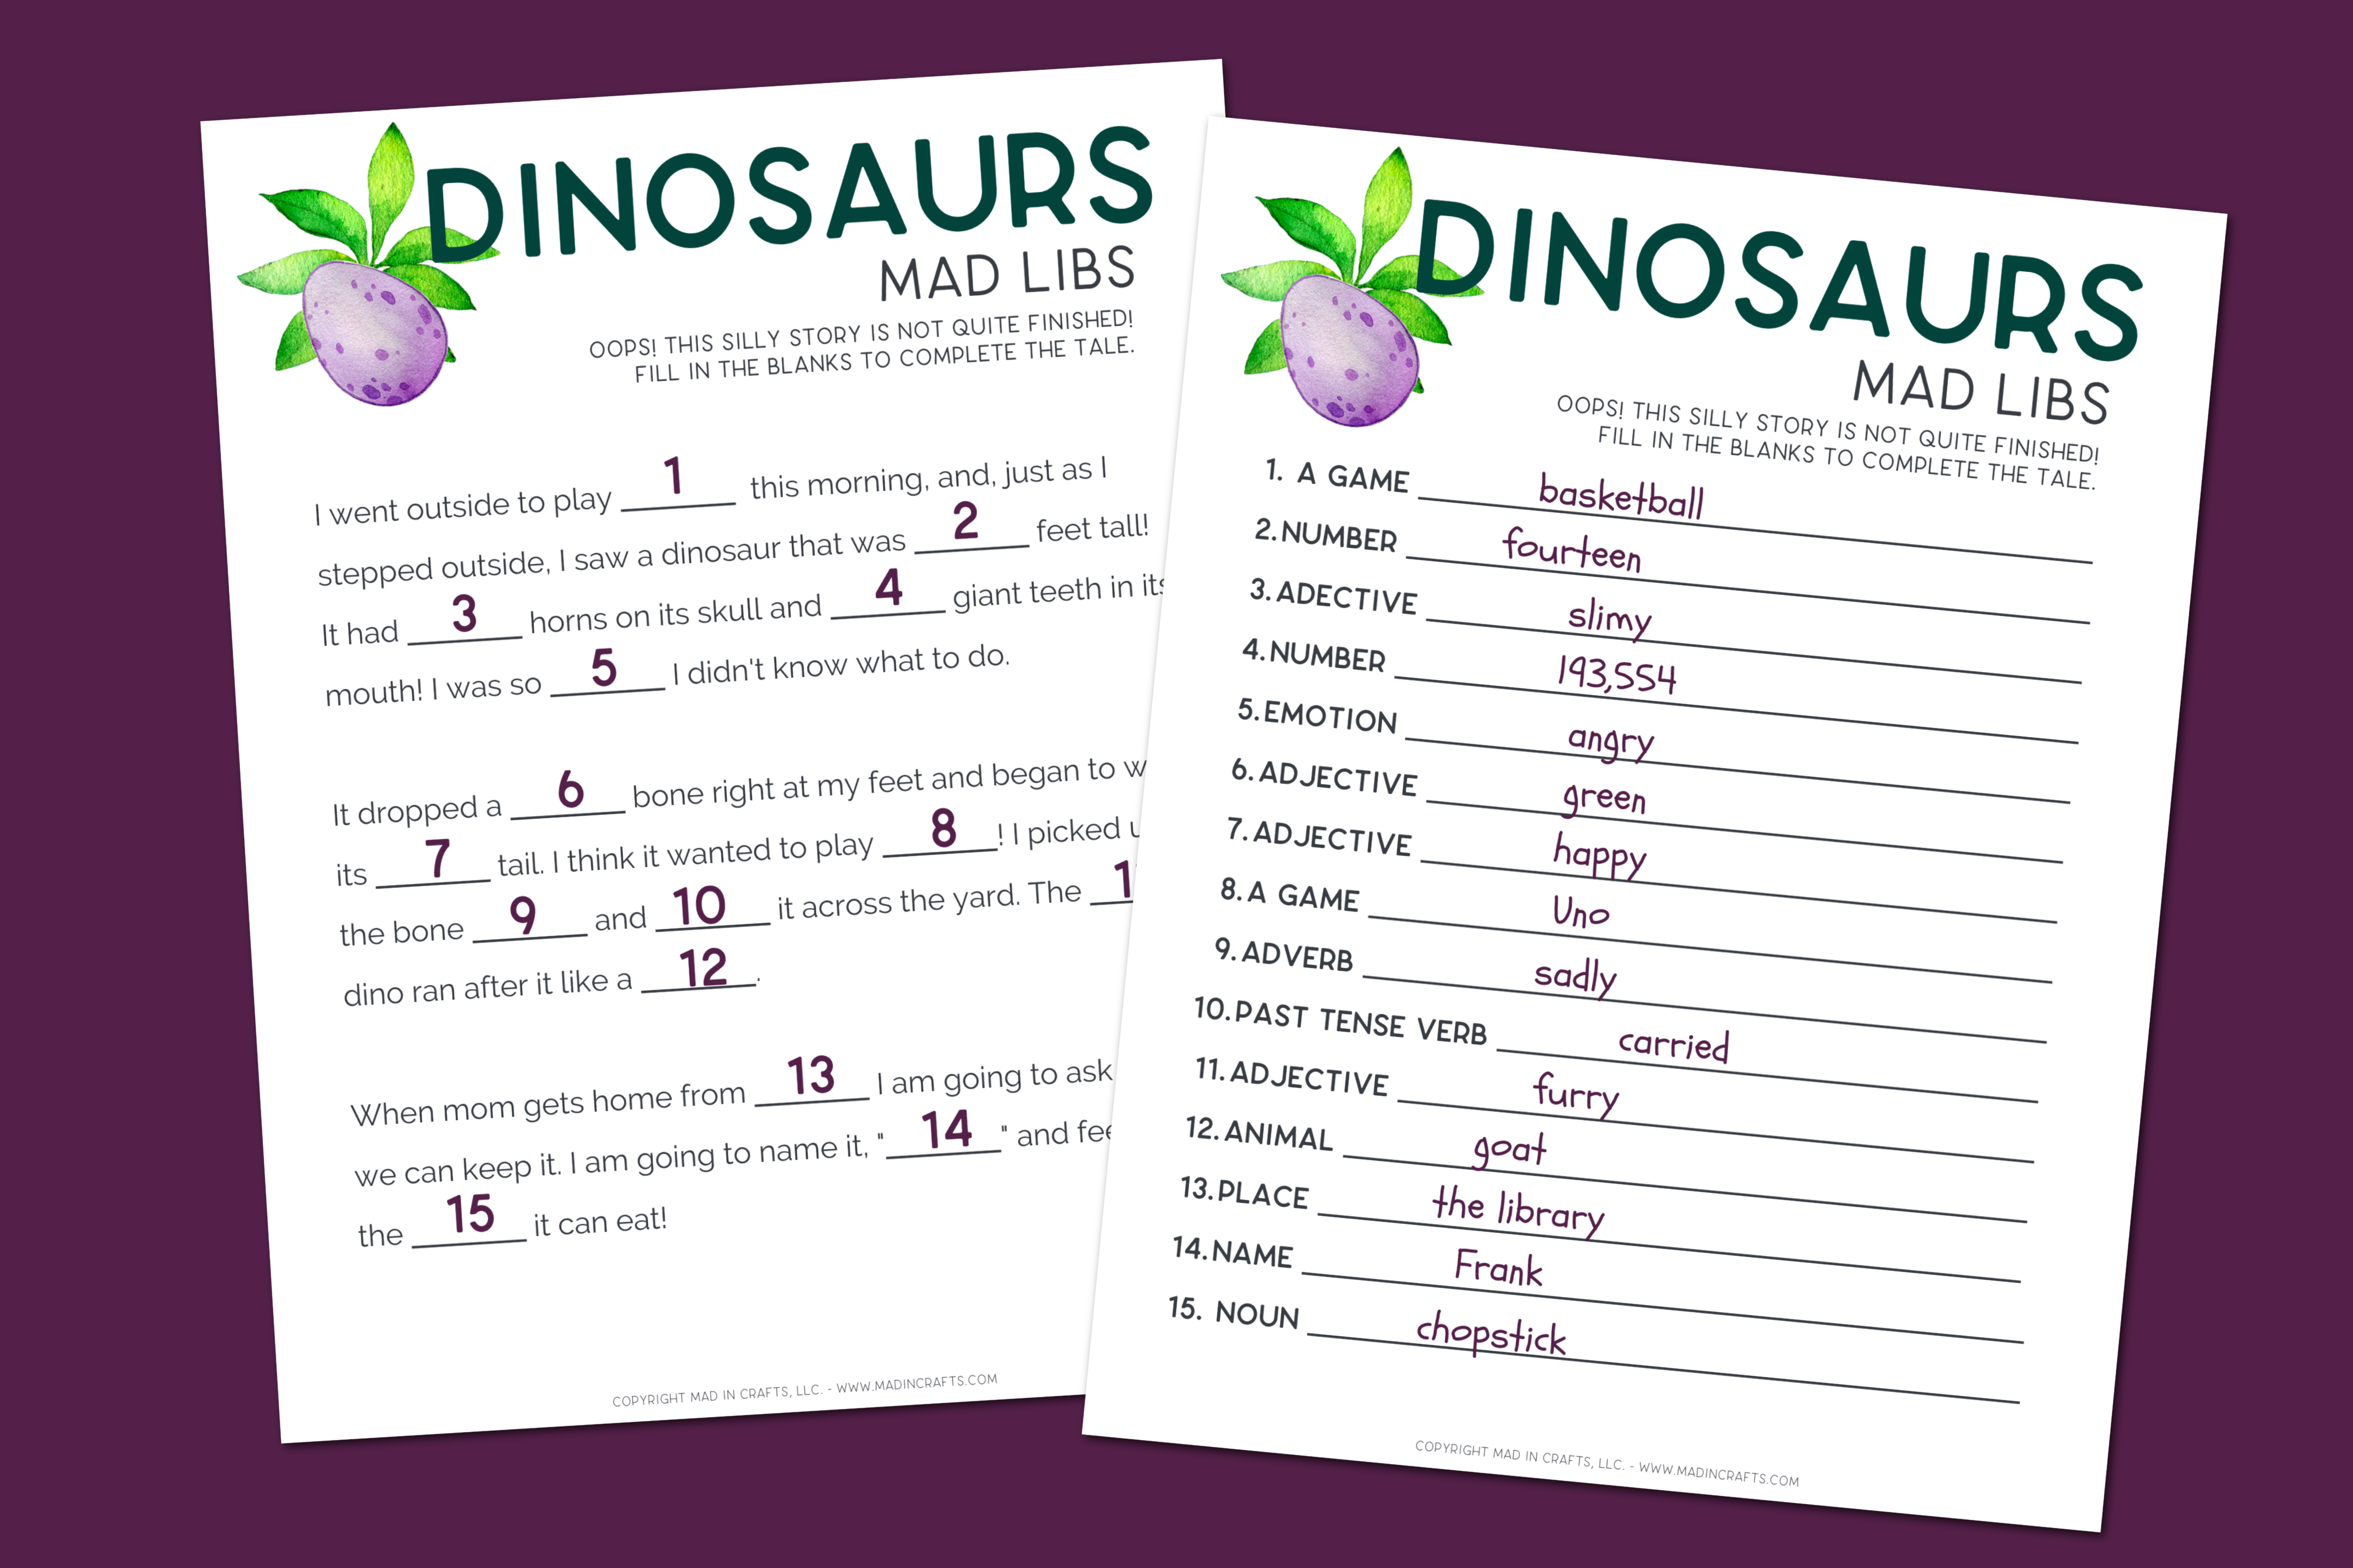 Printable dinosaur mad lib sheet and answer sheet